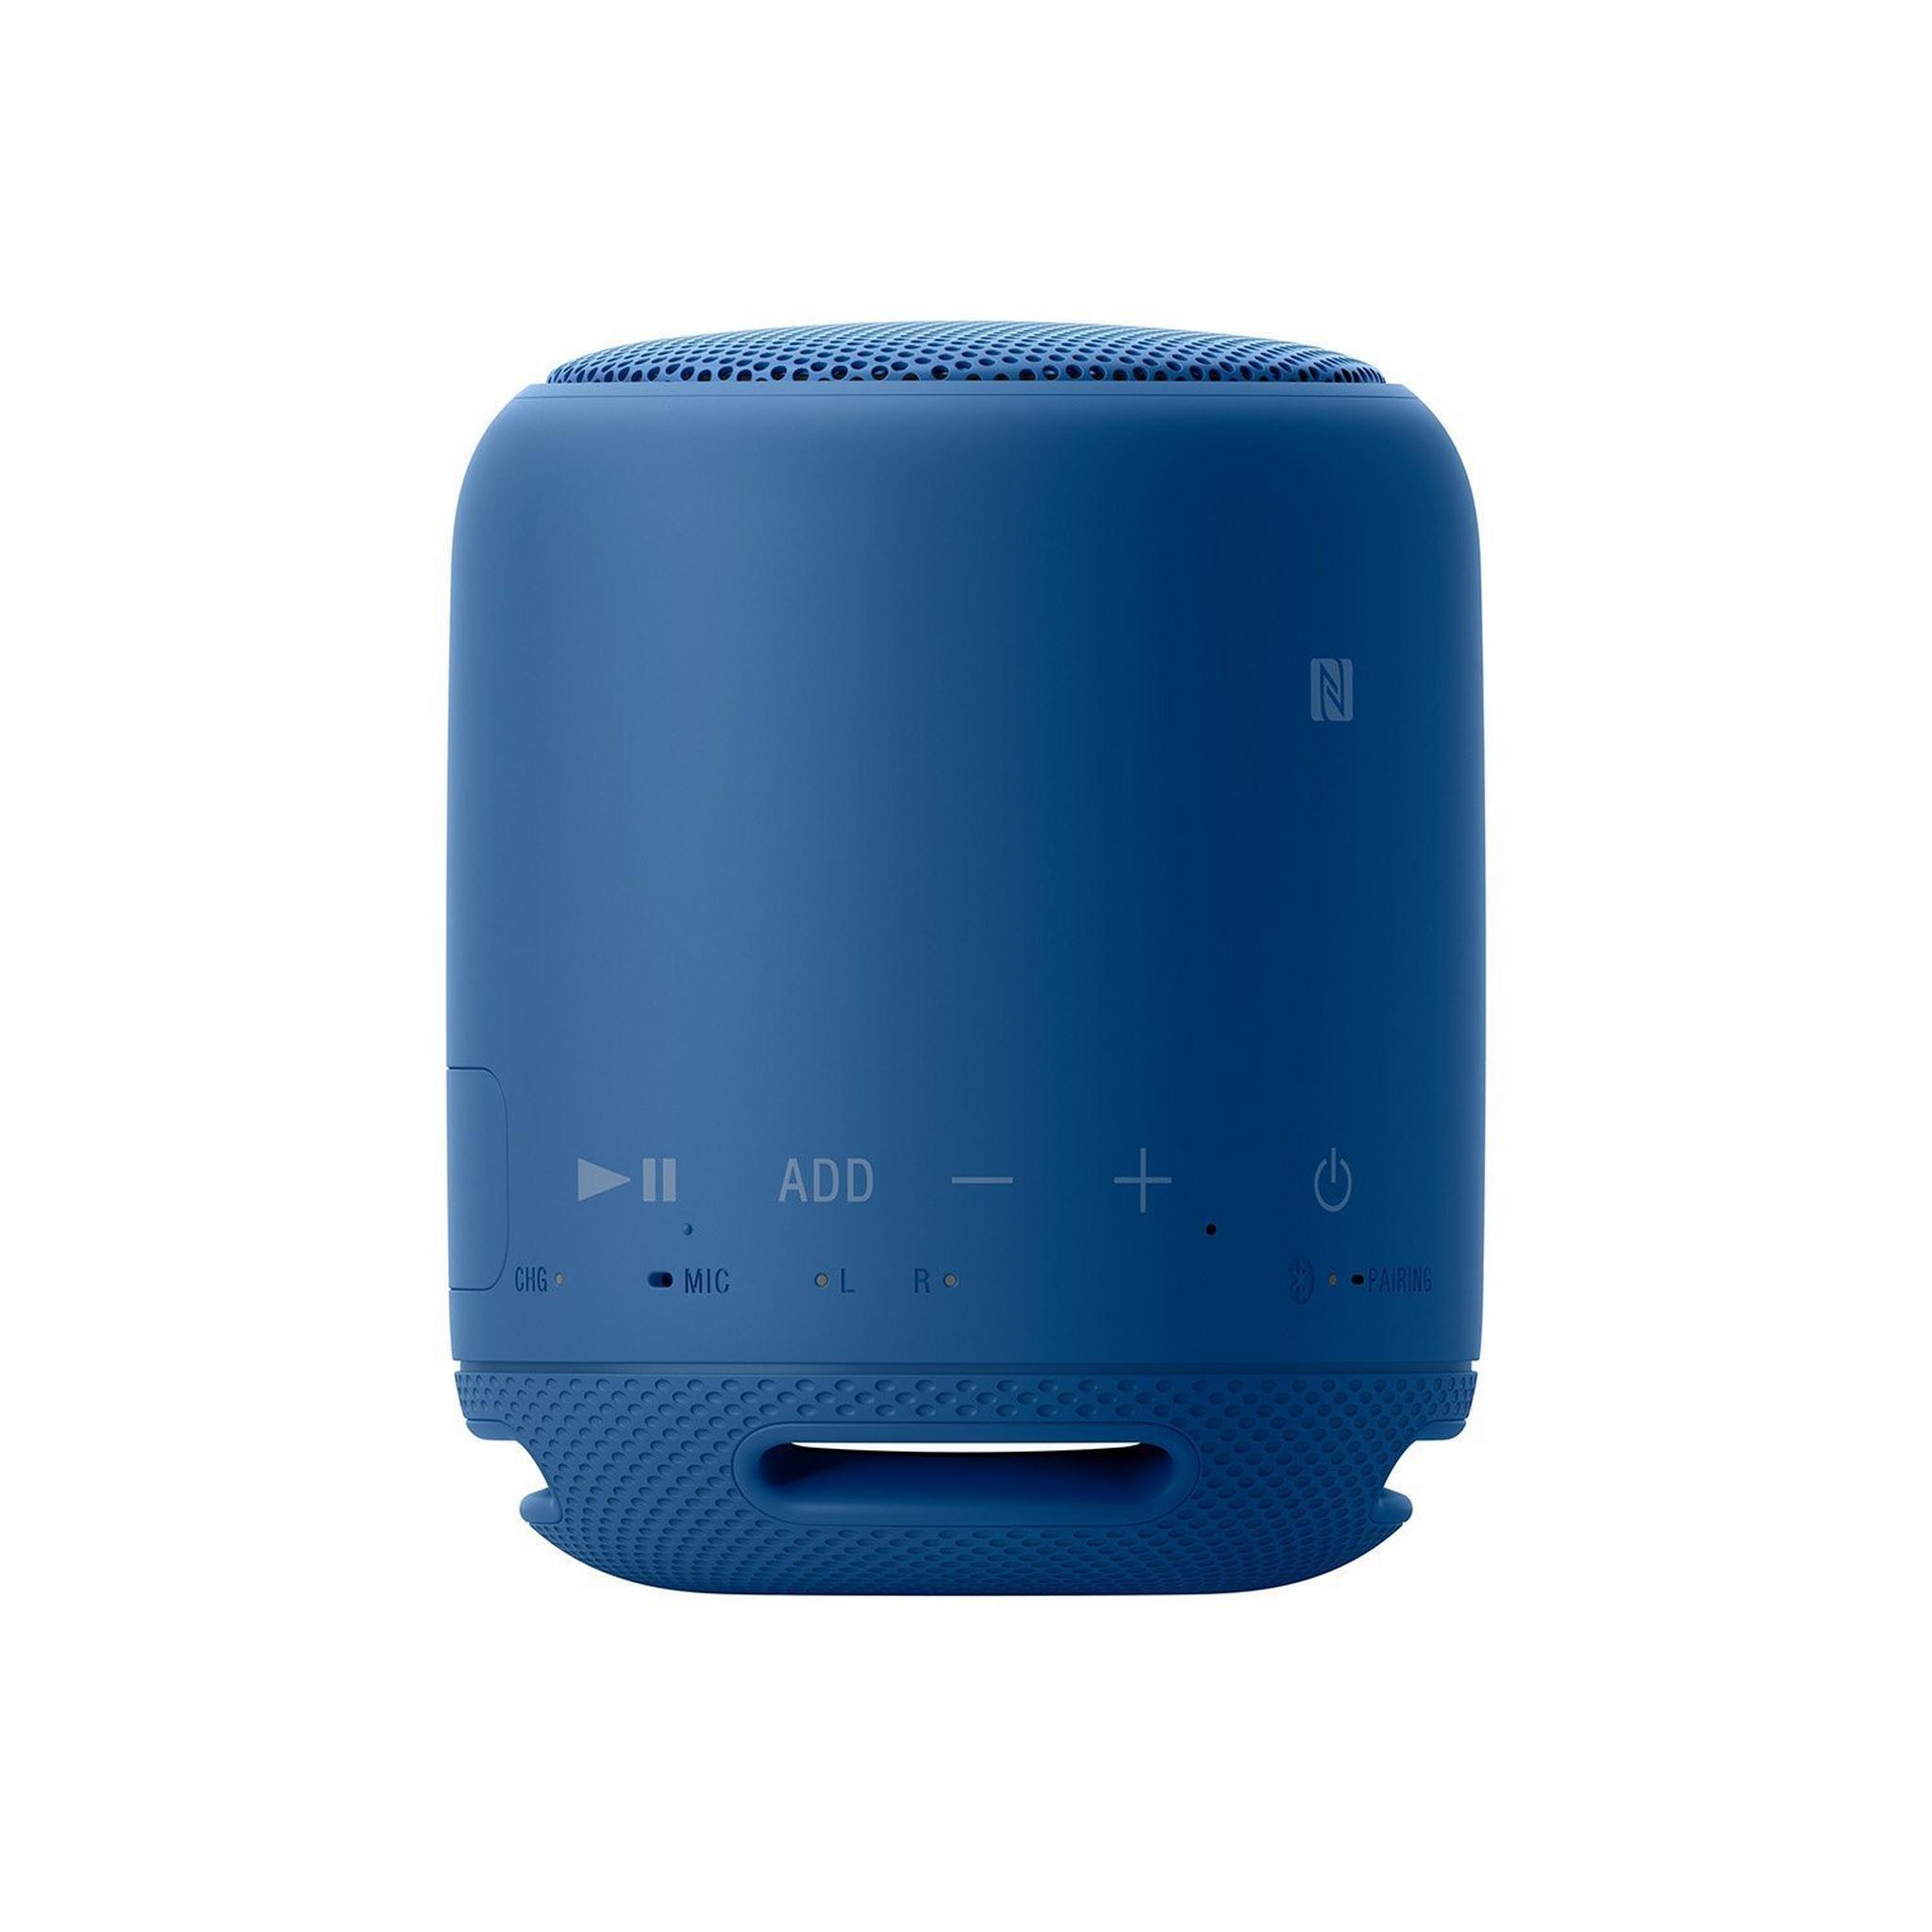 Sony Bluetooth Wireless Portable Speaker (SRS-XB10) - Blue